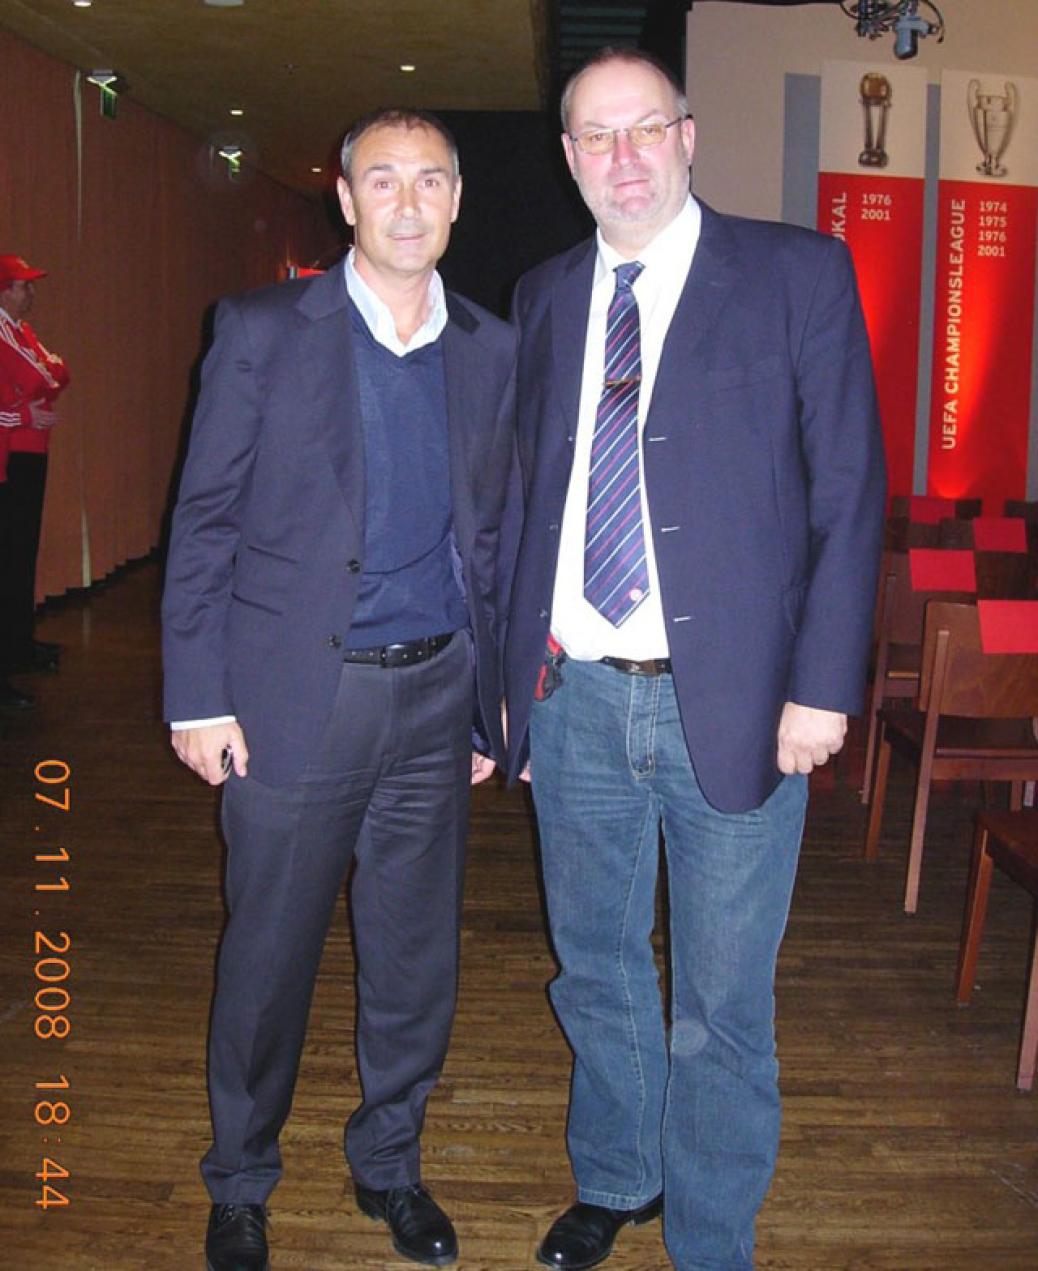 Vorstand Gerald Stutz bei der JHV des FC Bayern München